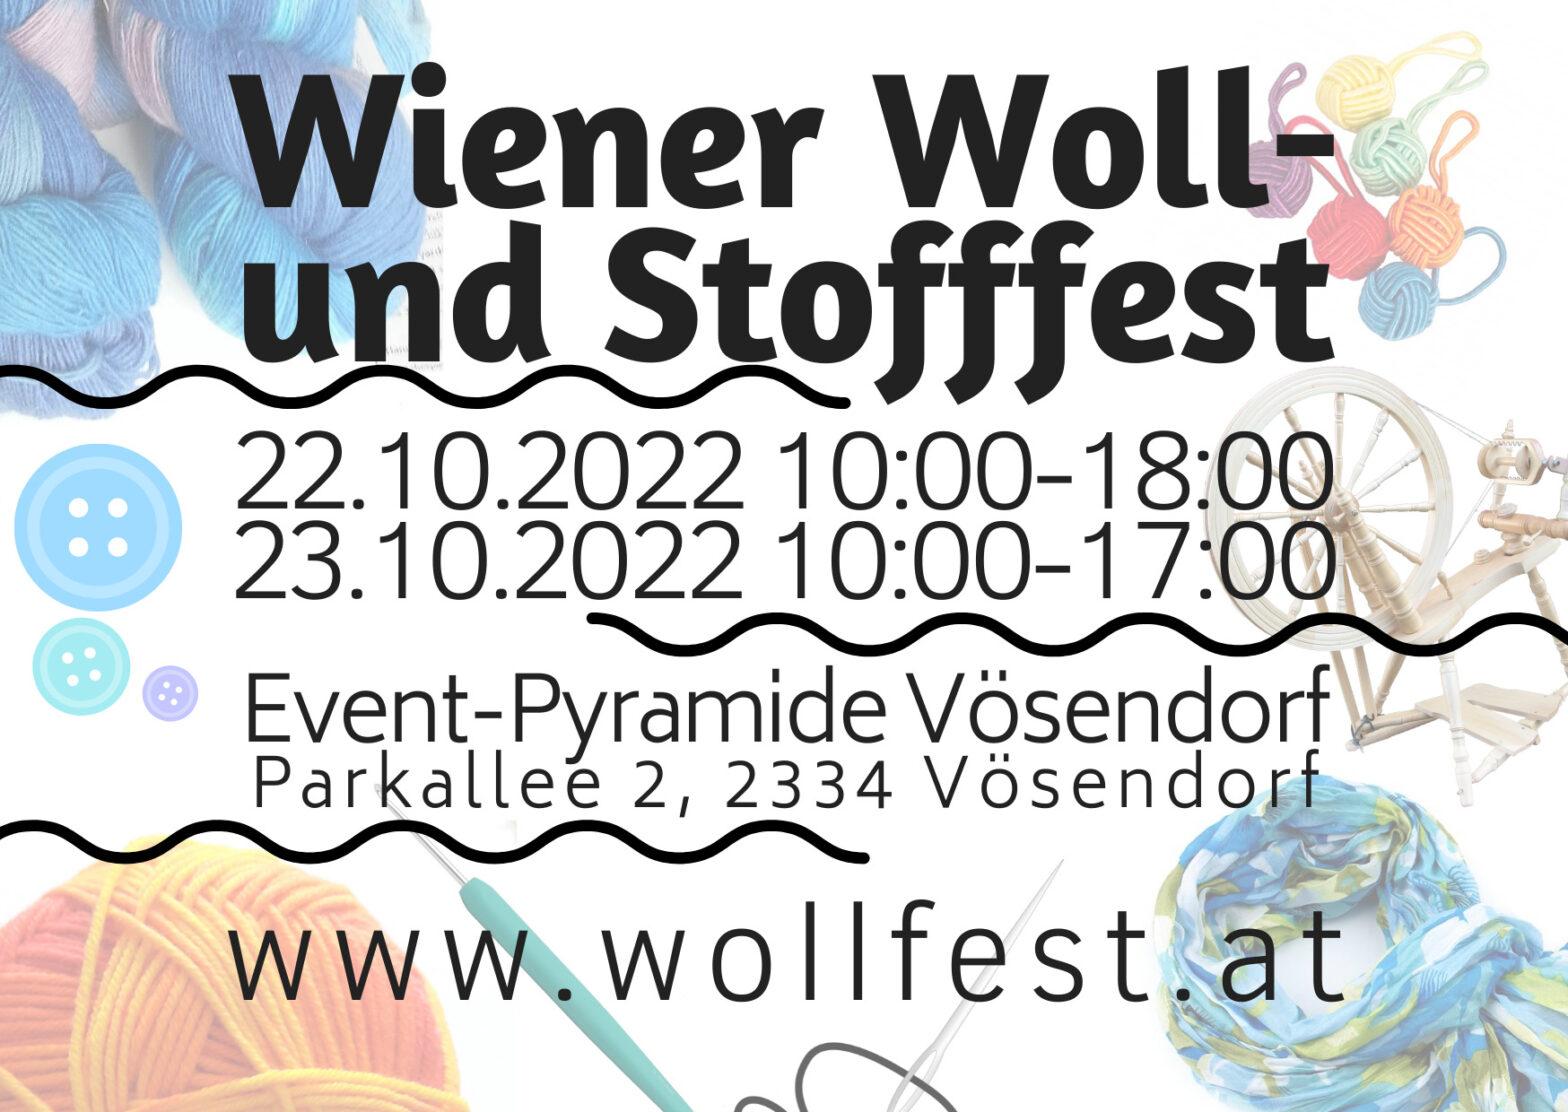 Wiener Woll- und Stofffest